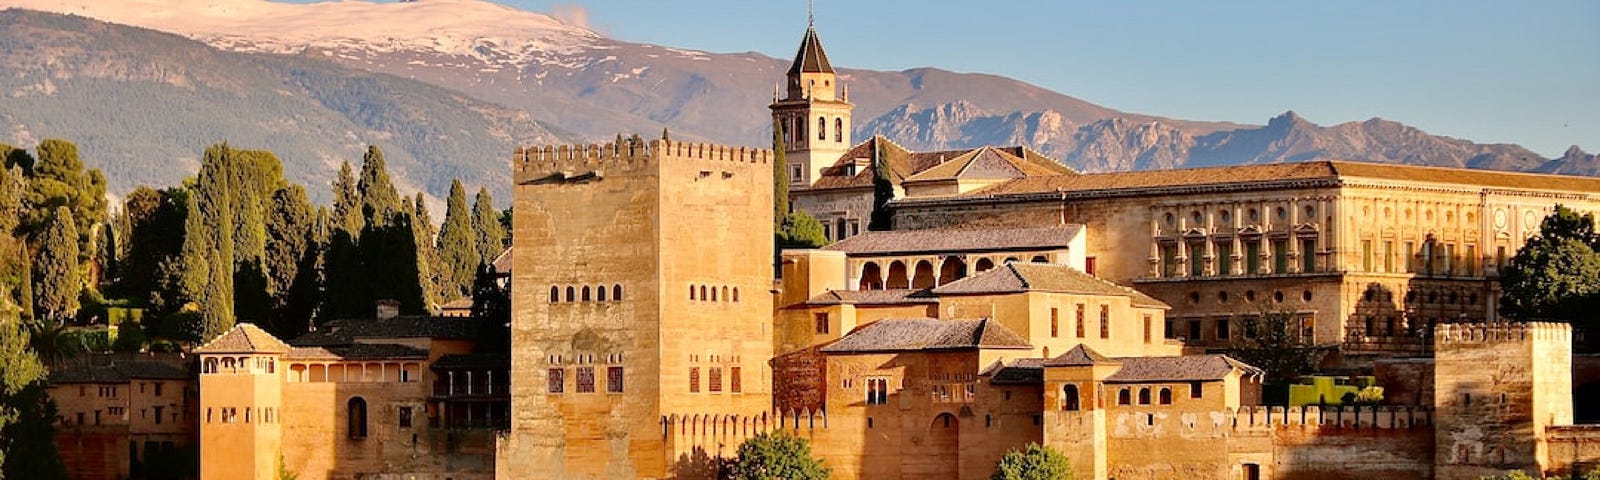 The magnificent Alhambra in Granada